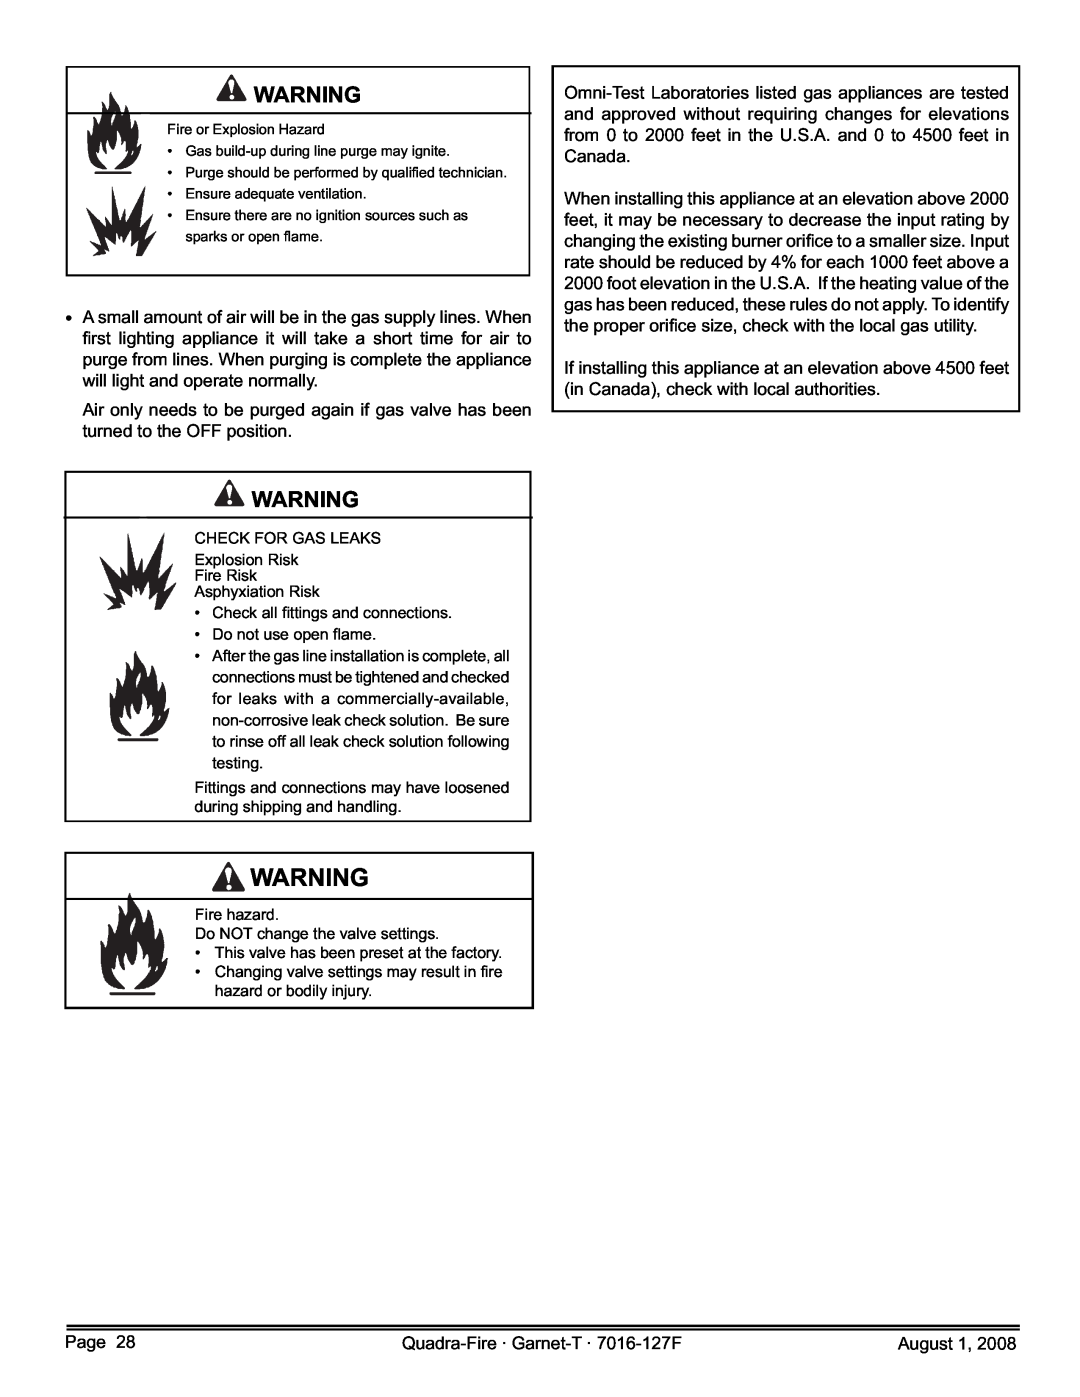 Quadra-Fire GARNET-D-CWL, GARNET-MBK, GARNET-D-PMH, GARNET-D-MBK, GARNET-D-CSB owner manual Page 